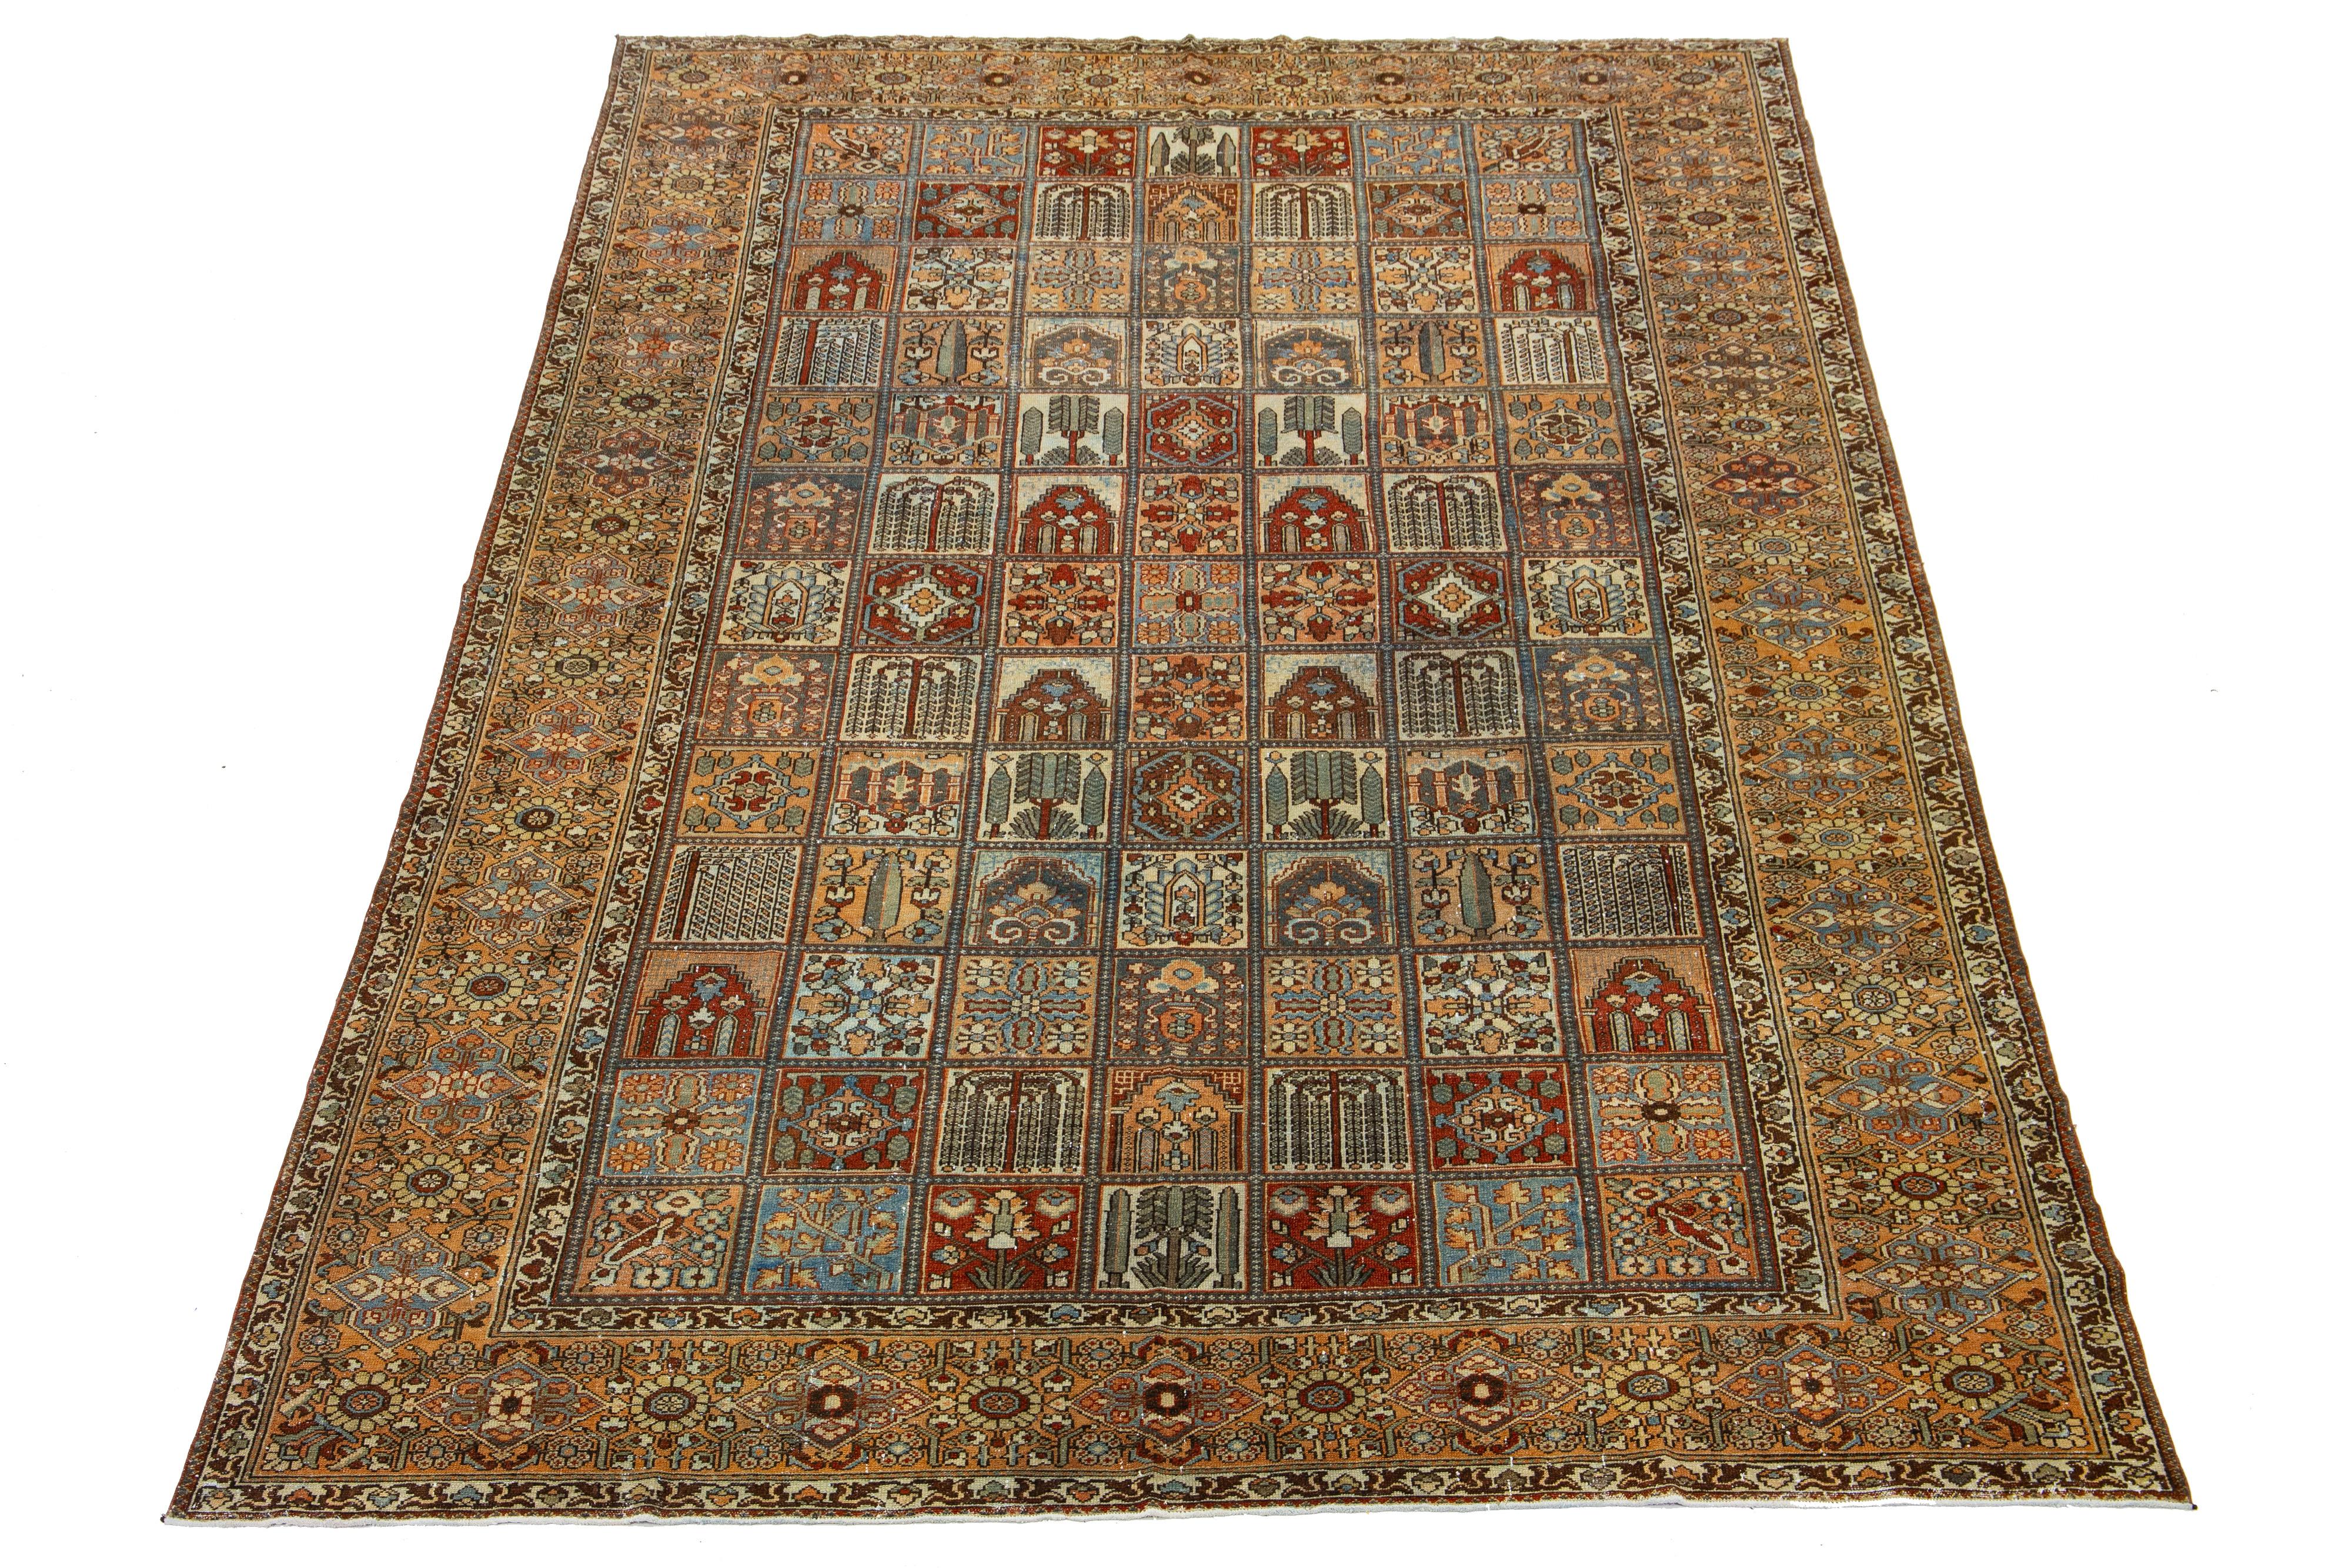 Schöner antiker Bachtiari-Teppich aus handgeknüpfter Wolle mit einem blauen, rostroten und pfirsichfarbenen Farbfeld. Dieses persische Stück hat ein klassisches geometrisches Blumenmuster.

Dieser Teppich misst 10'8